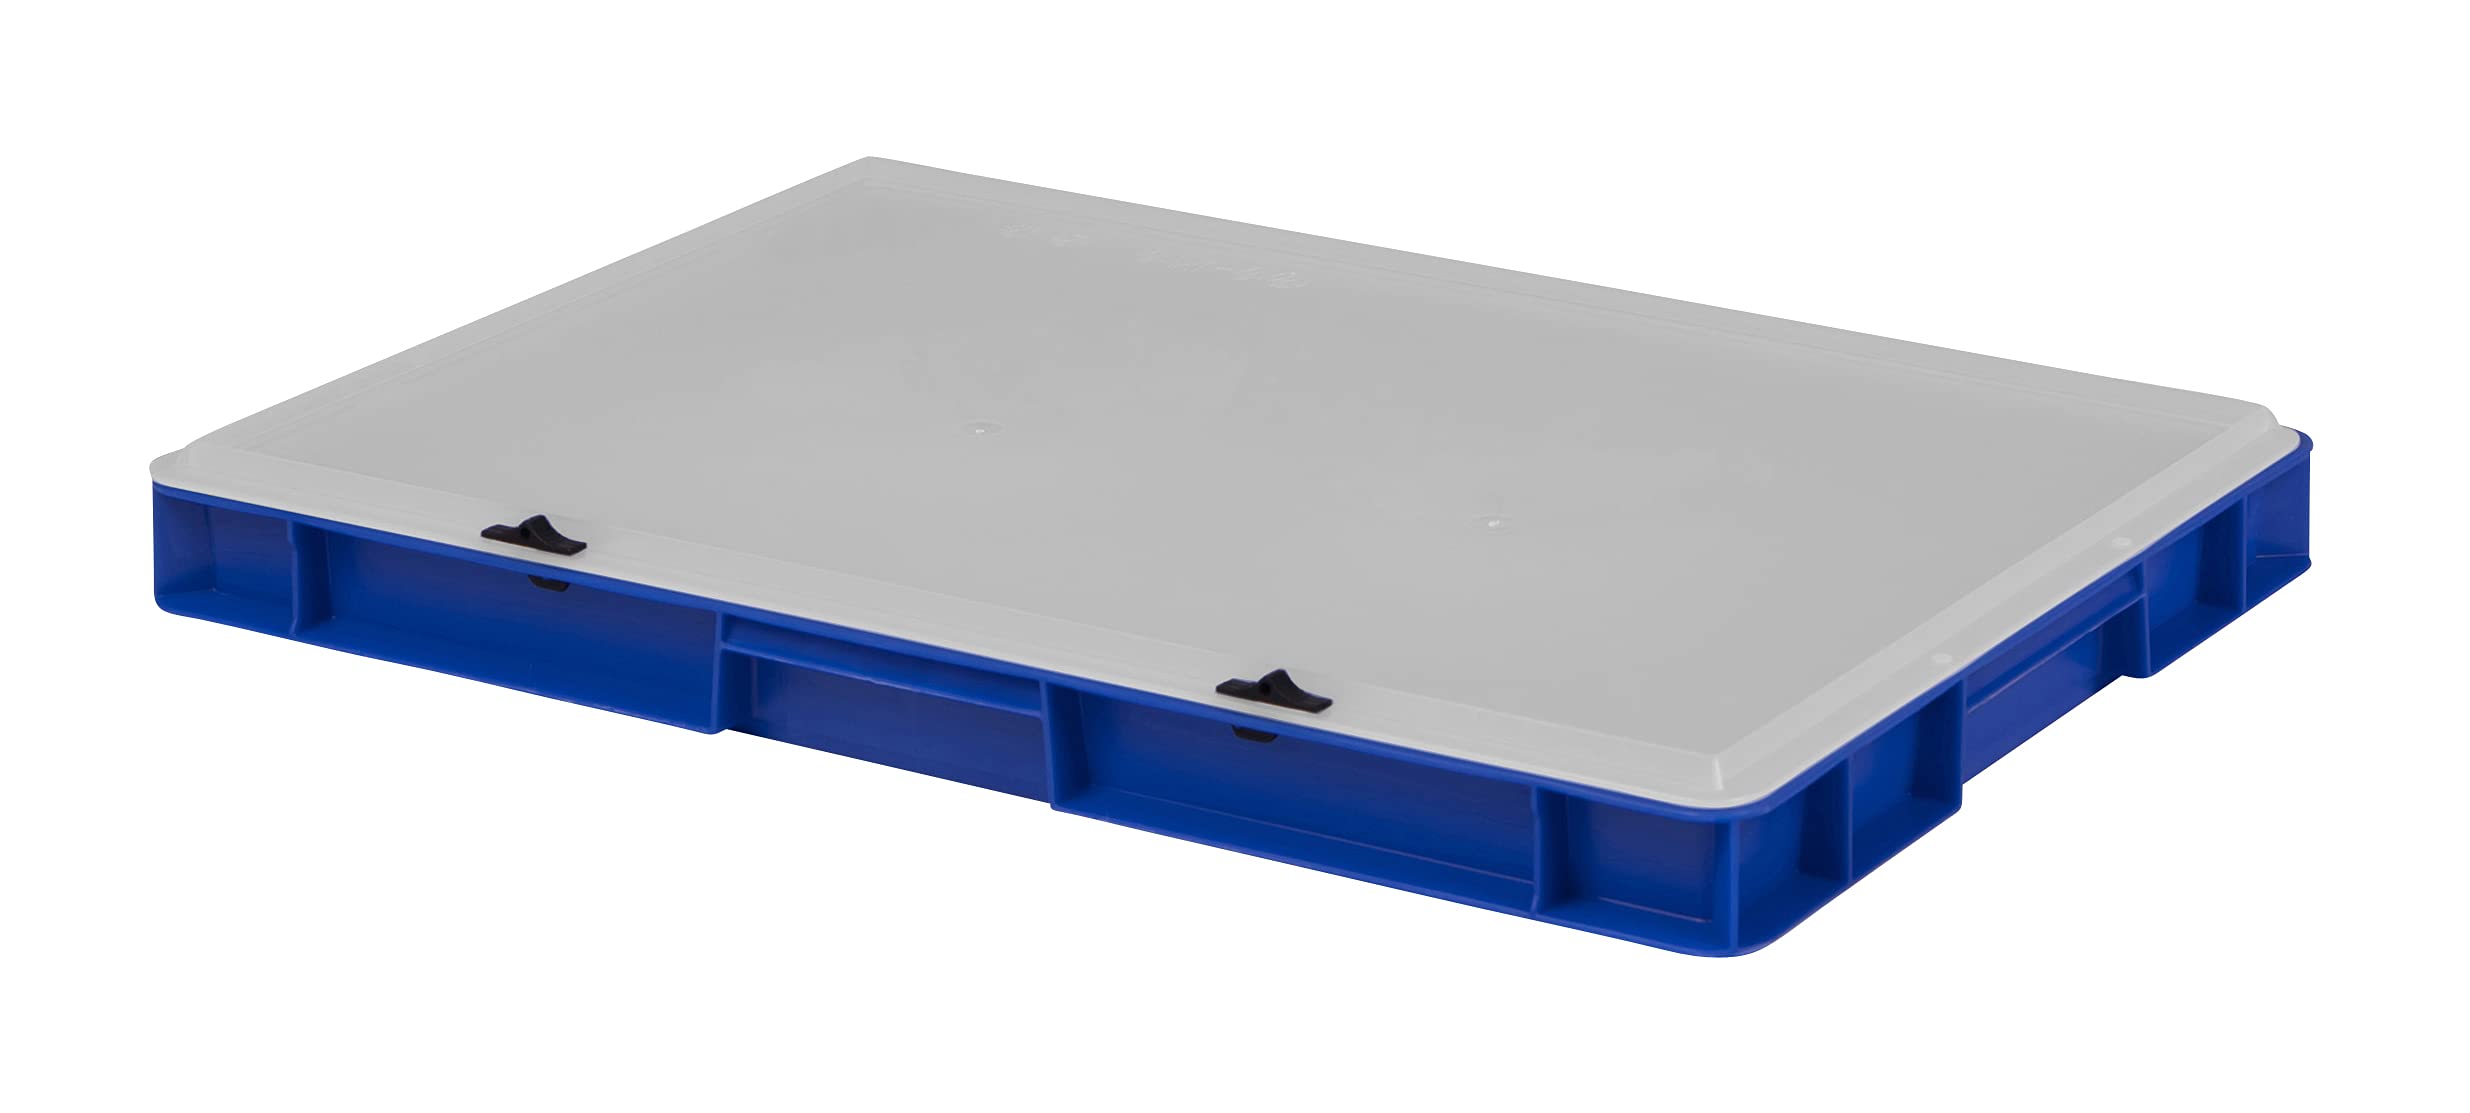 1a-TopStore Design Eurobox Stapelbox Lagerbehälter Kunststoffbox in 5 Farben und 16 Größen mit transparentem Deckel (matt) (blau, 60x40x6 cm)